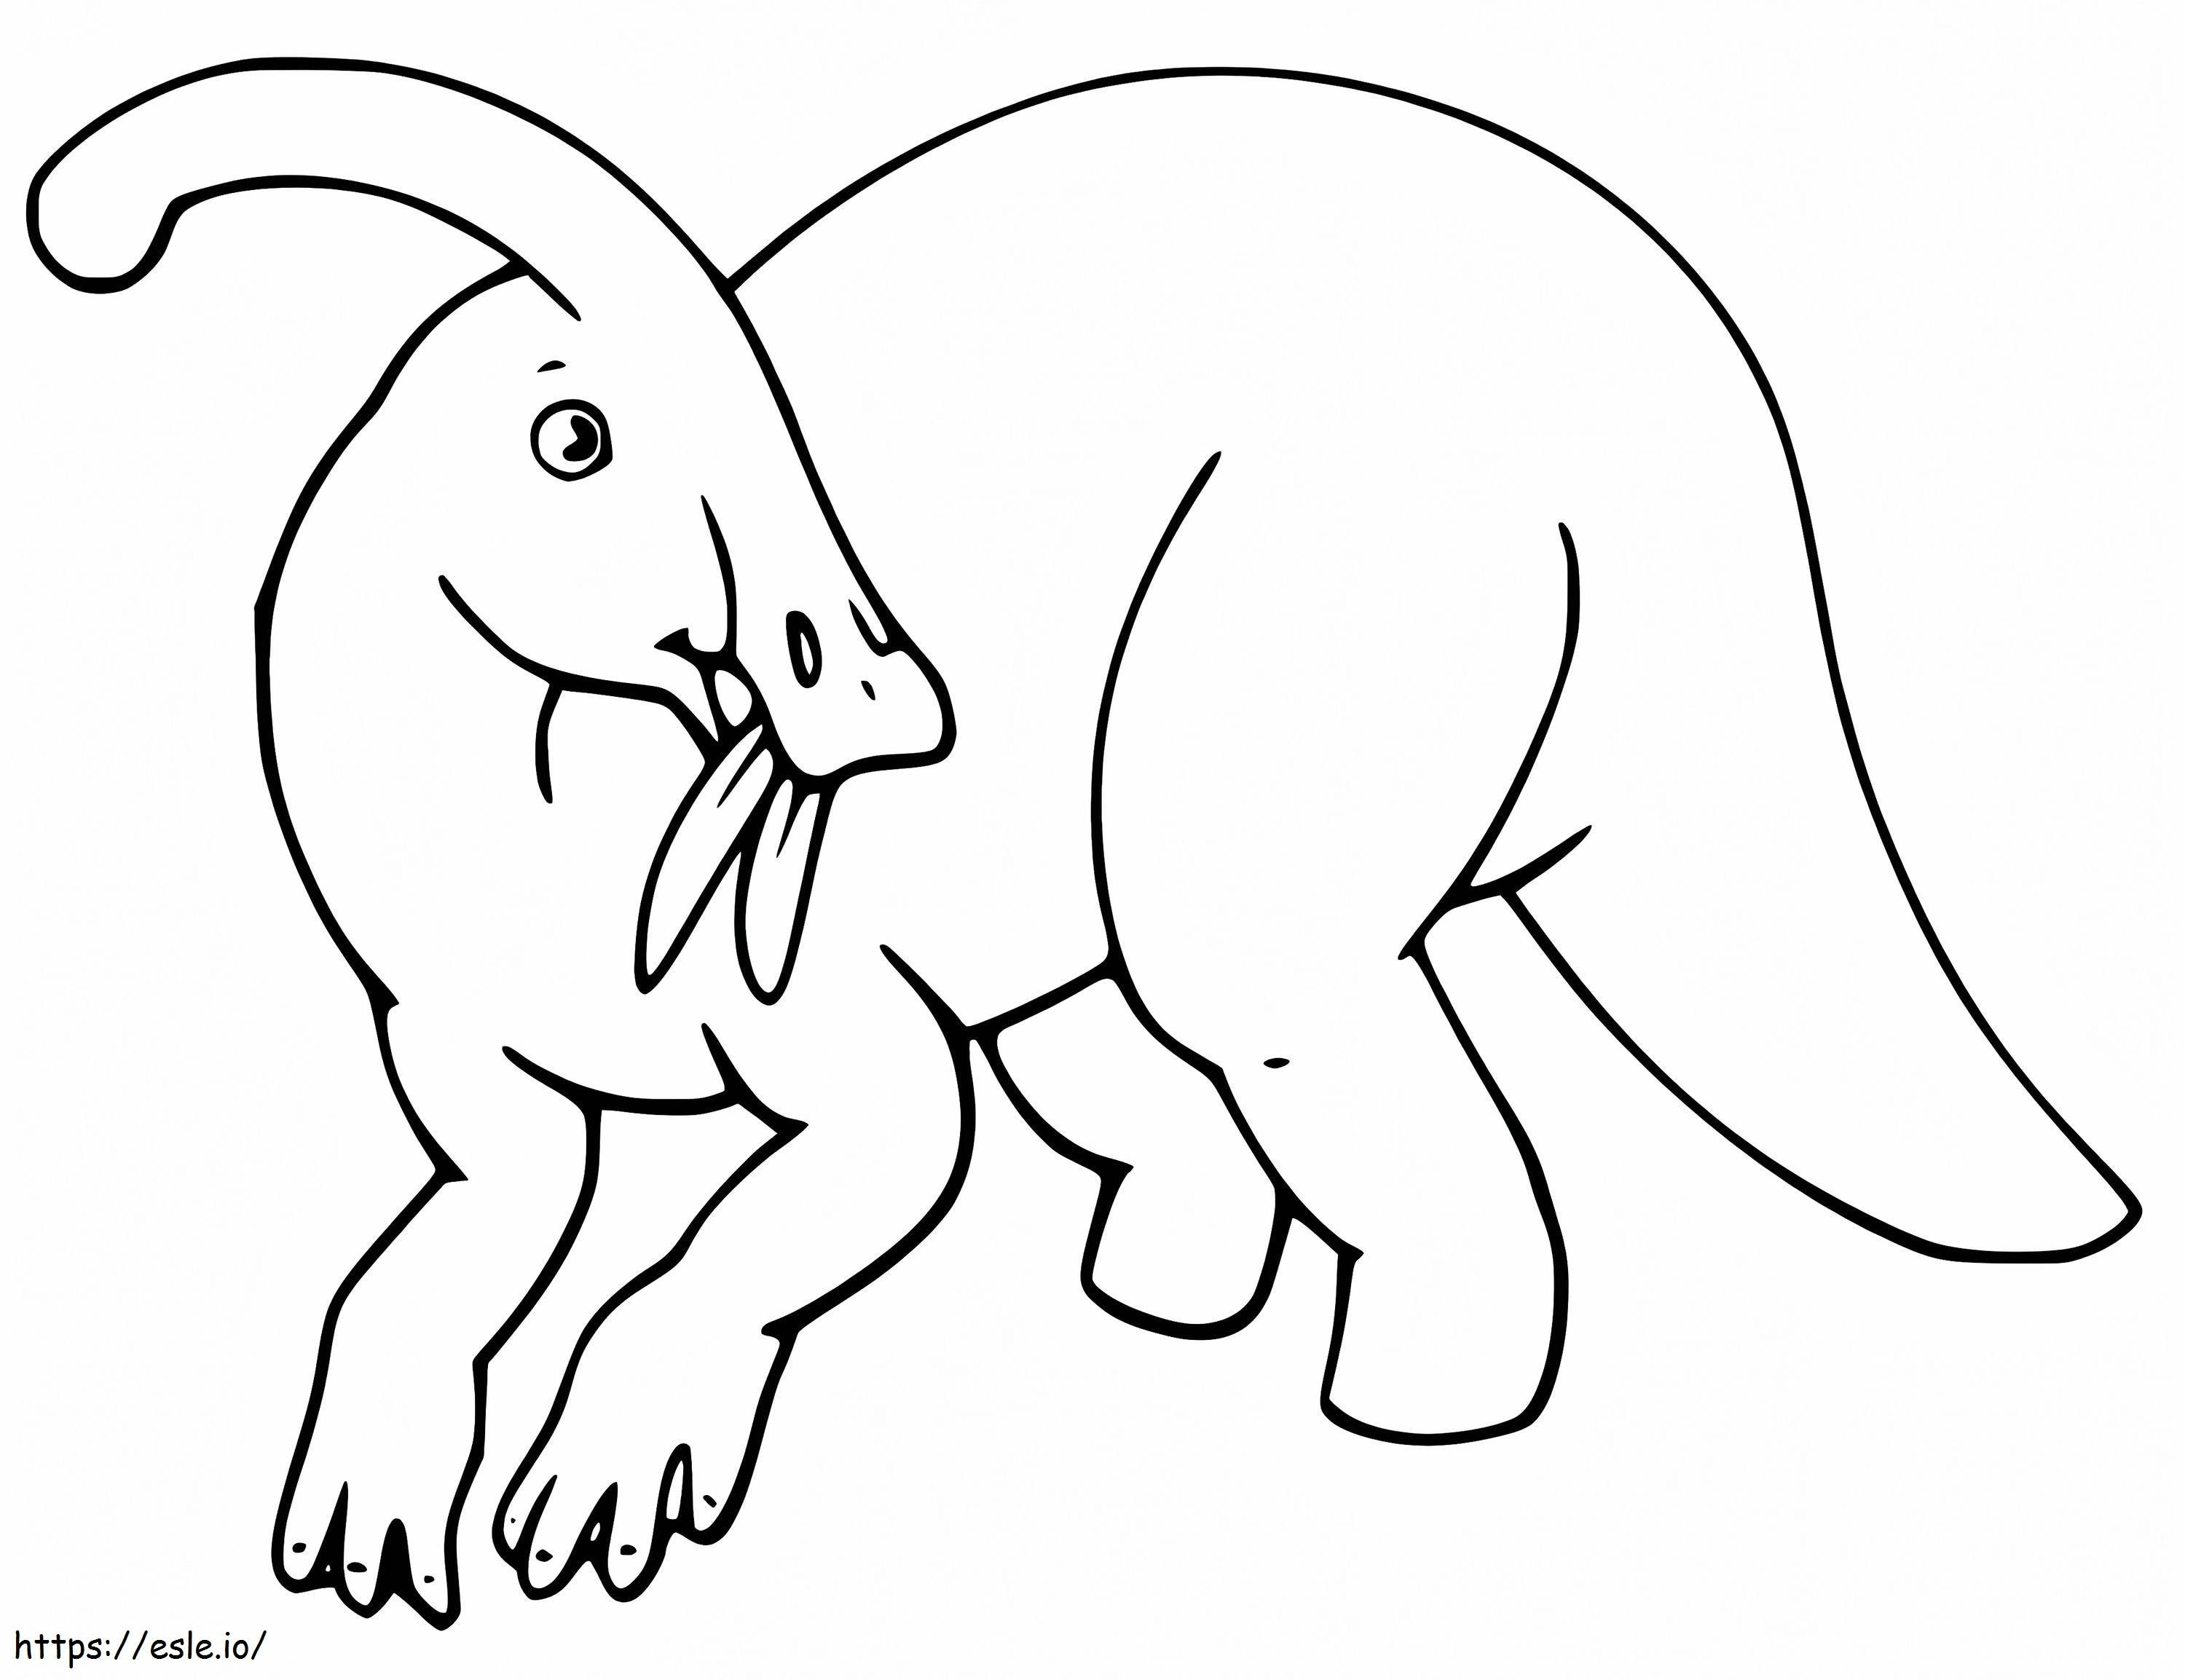 Parasaurolophus care mănâncă frunze de colorat